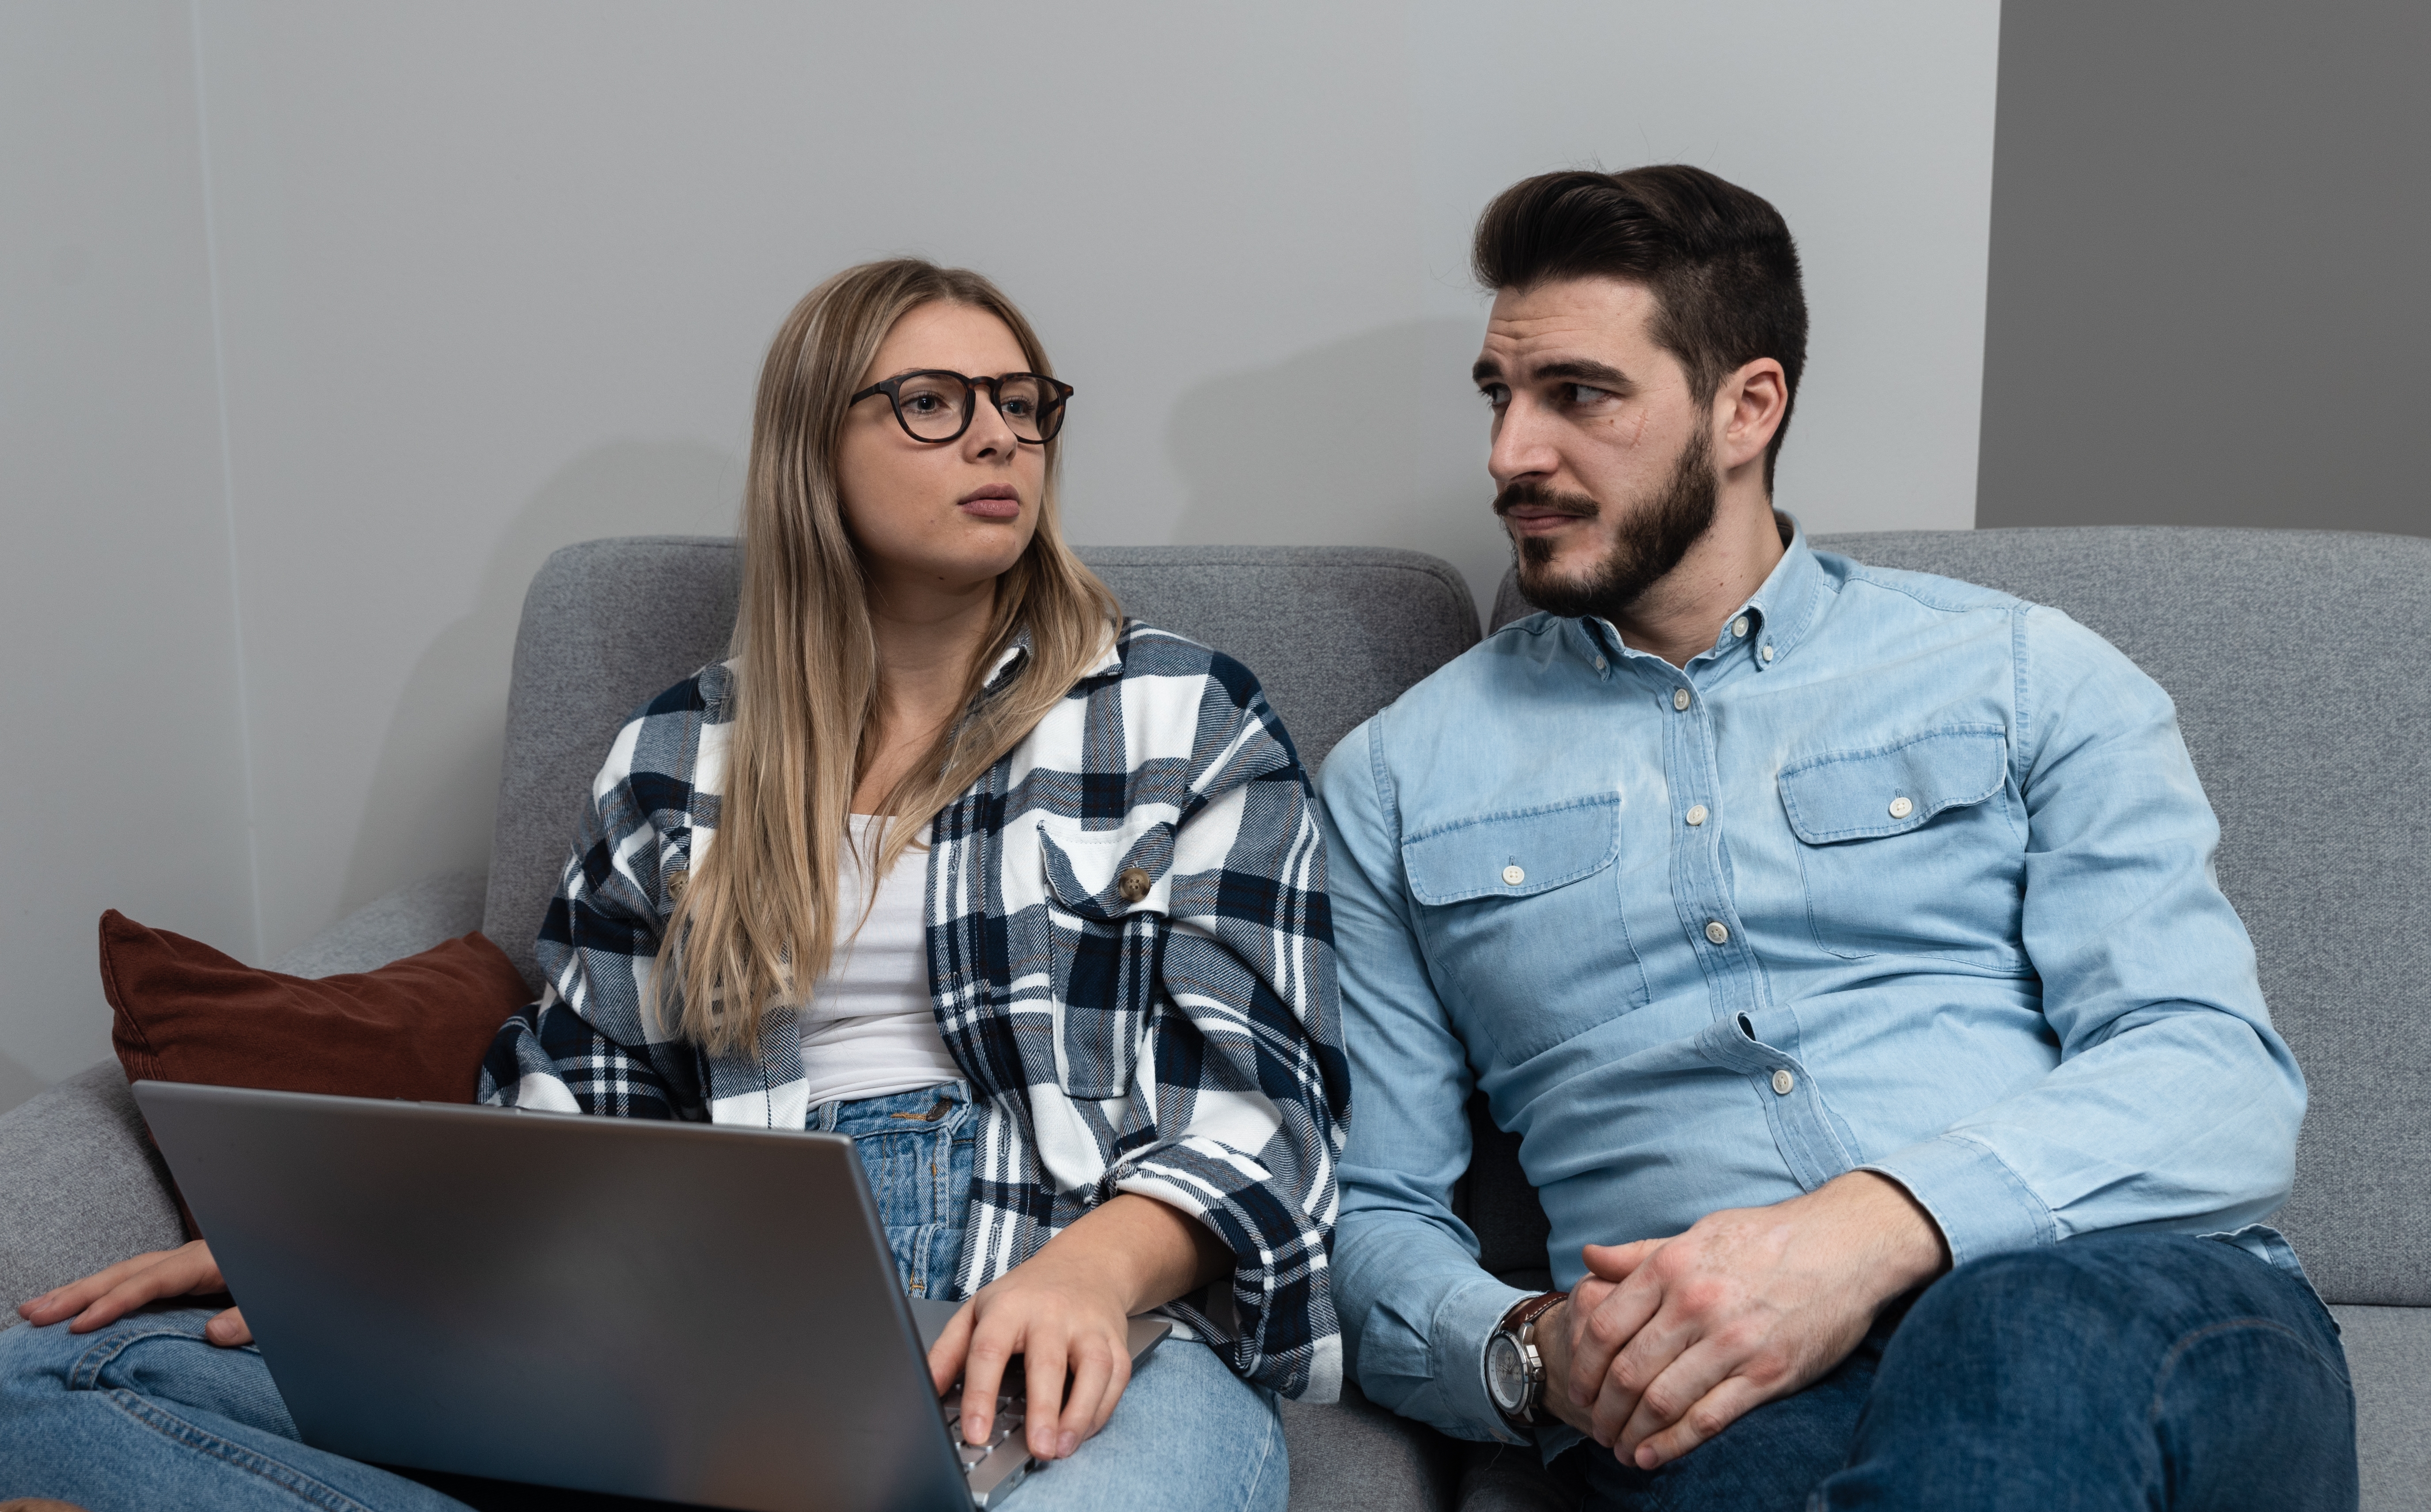 Un couple assis ensemble discutant de quelque chose tandis qu'un ordinateur portable est posé sur les genoux de la femme | Source : Shutterstock